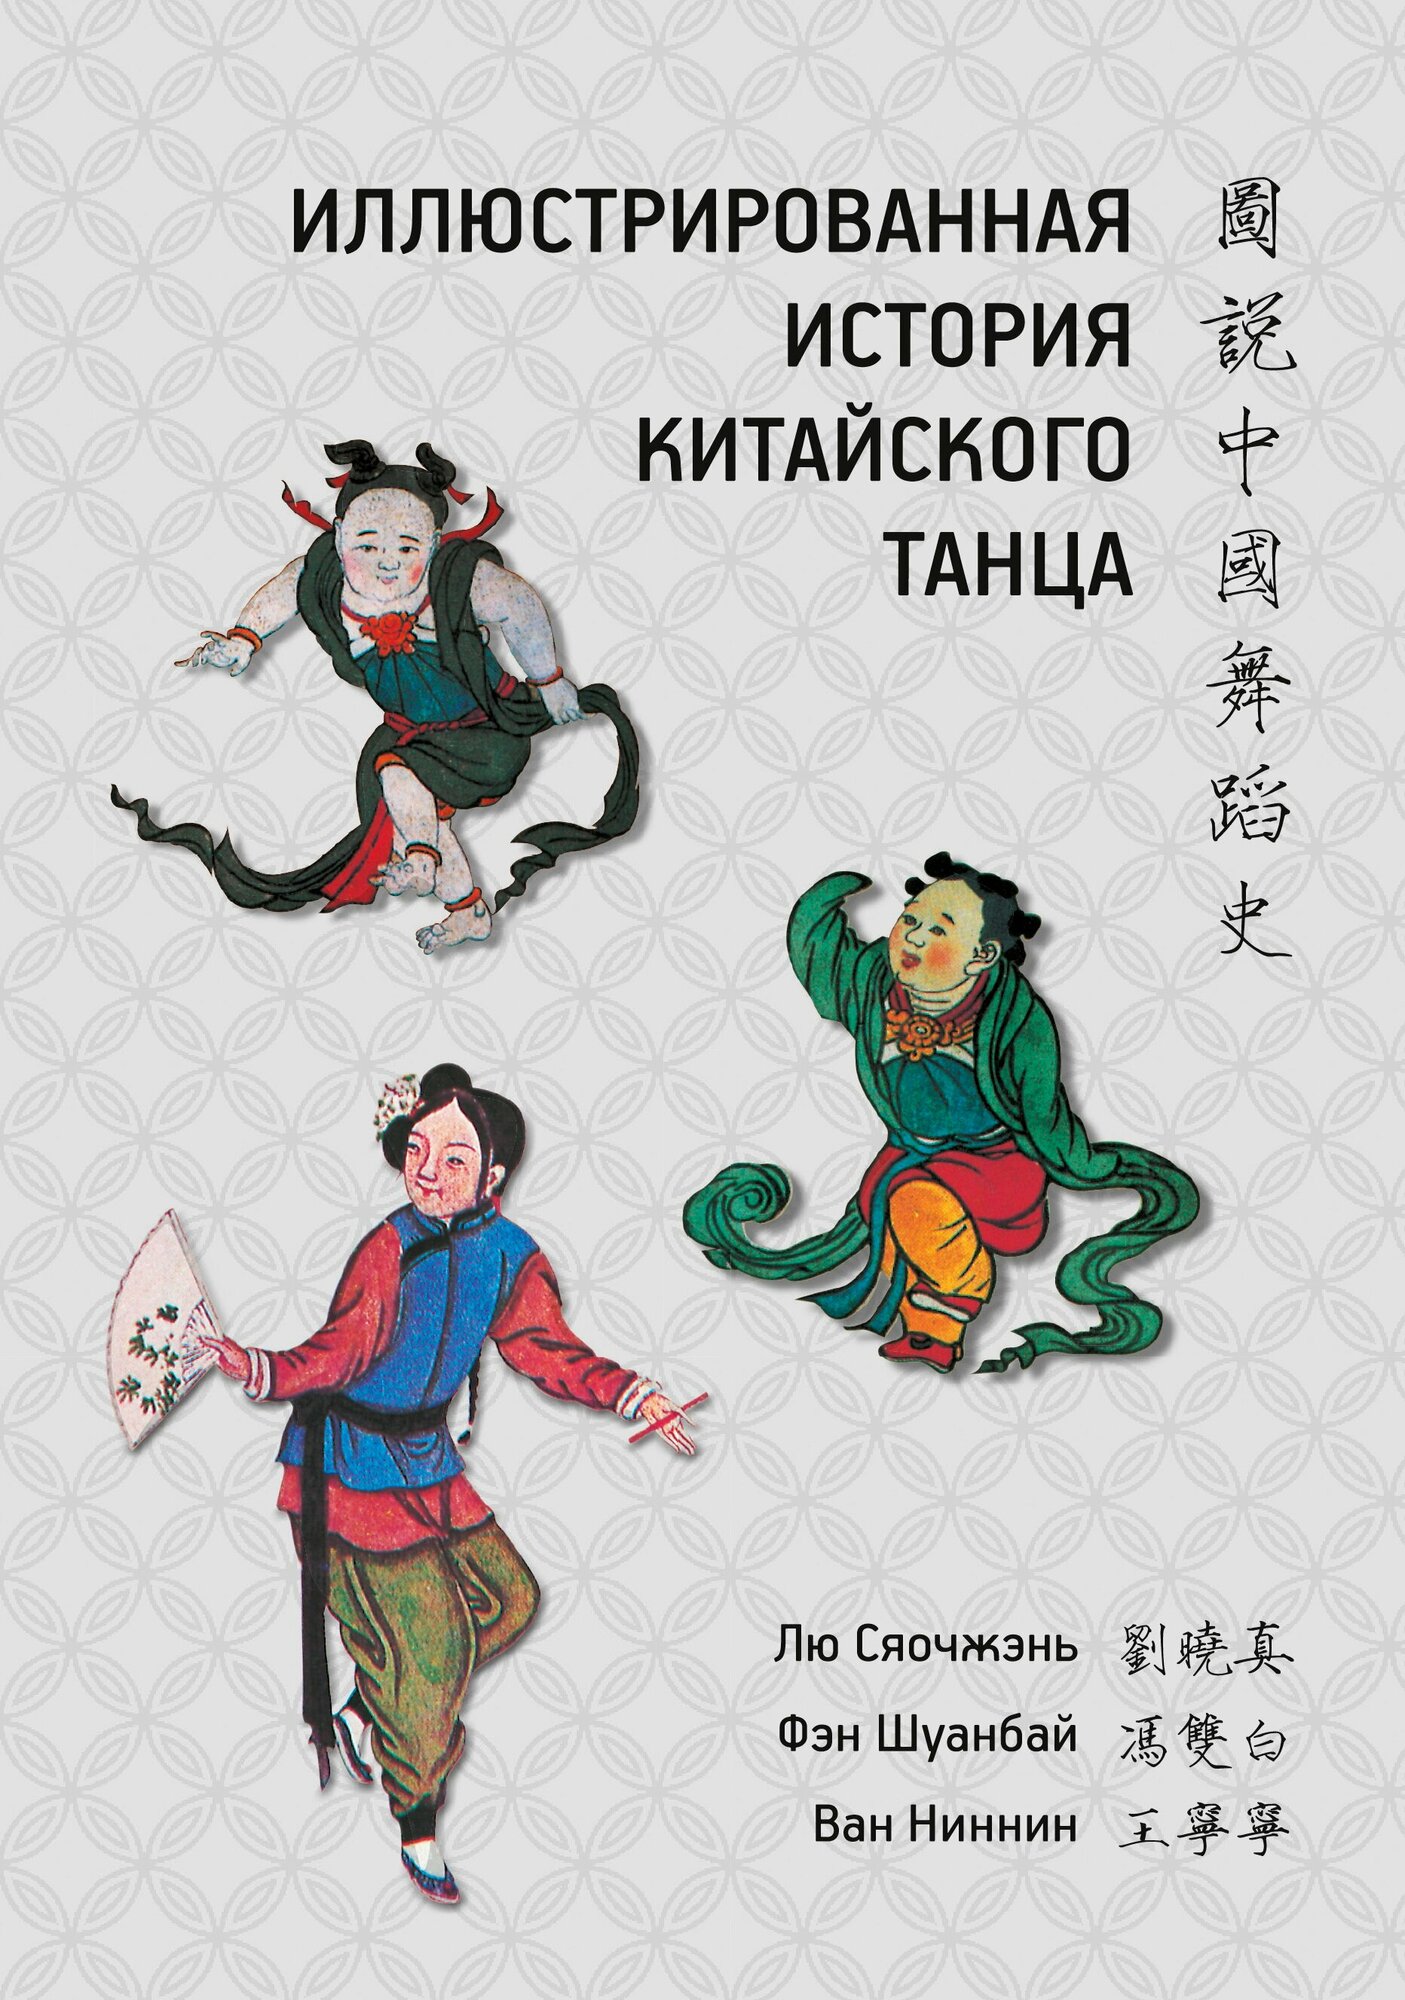 Иллюстрированная история китайского танца - фото №10